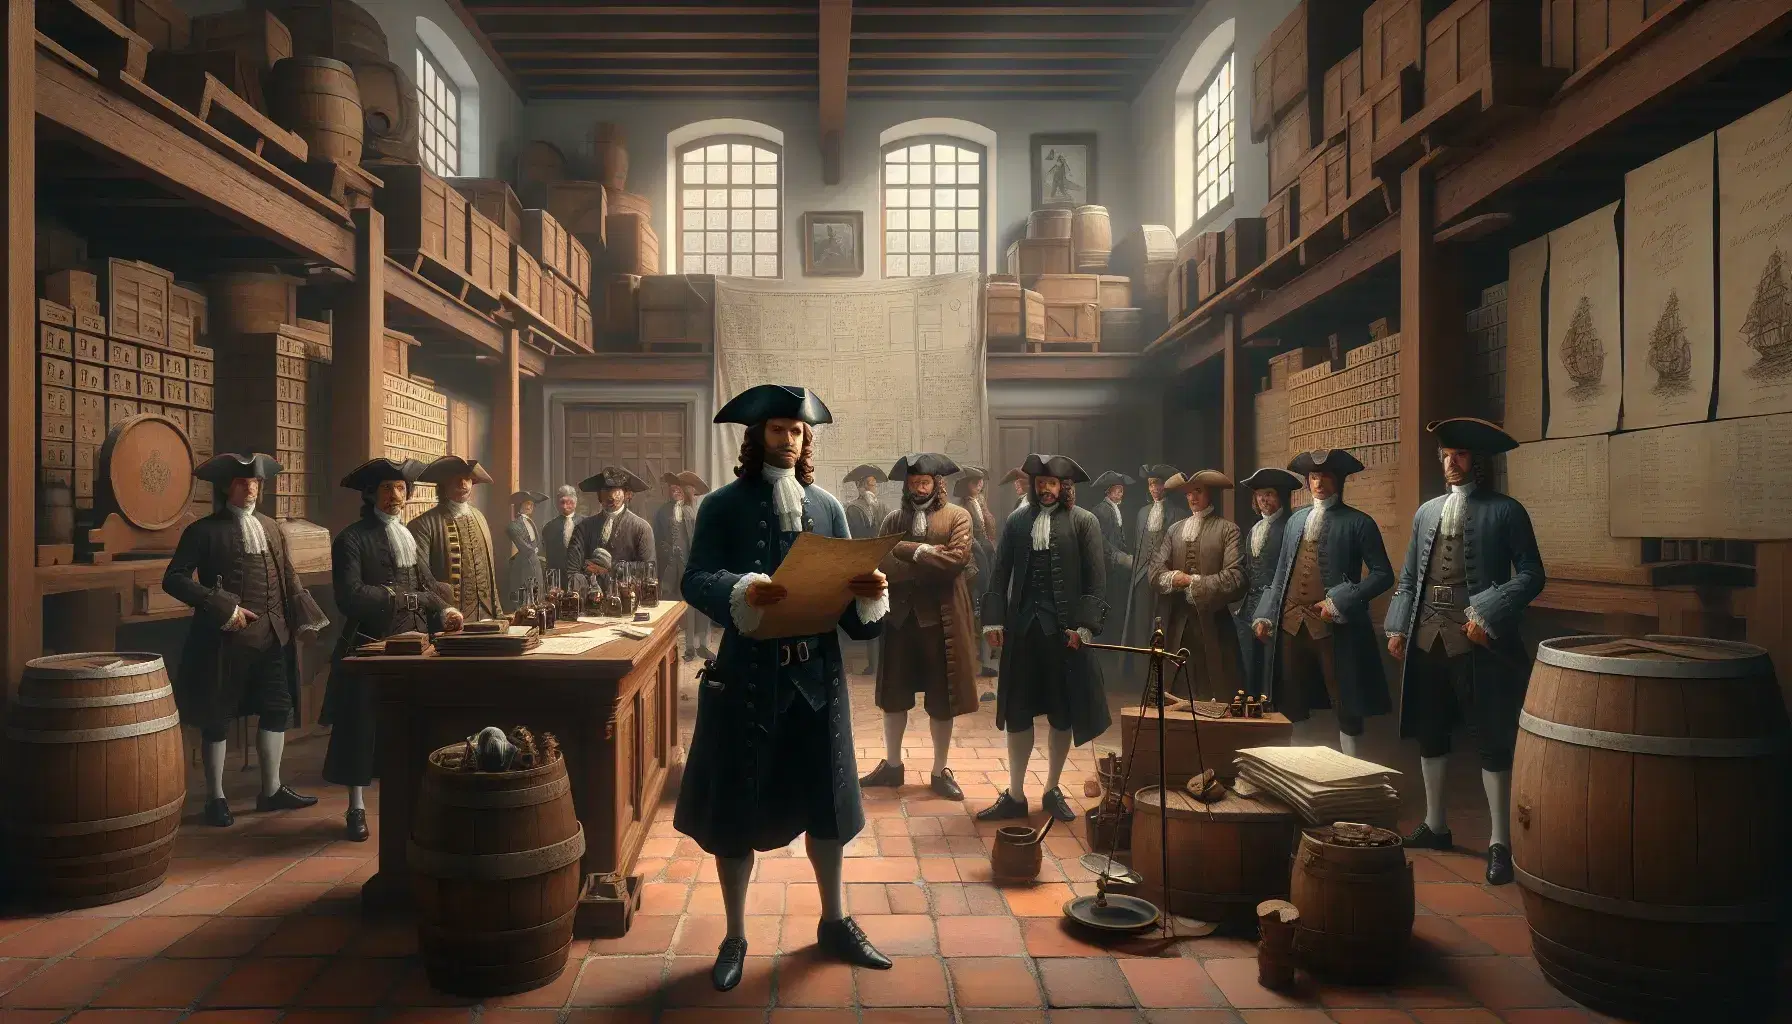 Escena del siglo XVIII con un hombre sosteniendo un documento y rodeado de comerciantes en un almacén colonial, entre barriles y cajas, bajo una luz suave.